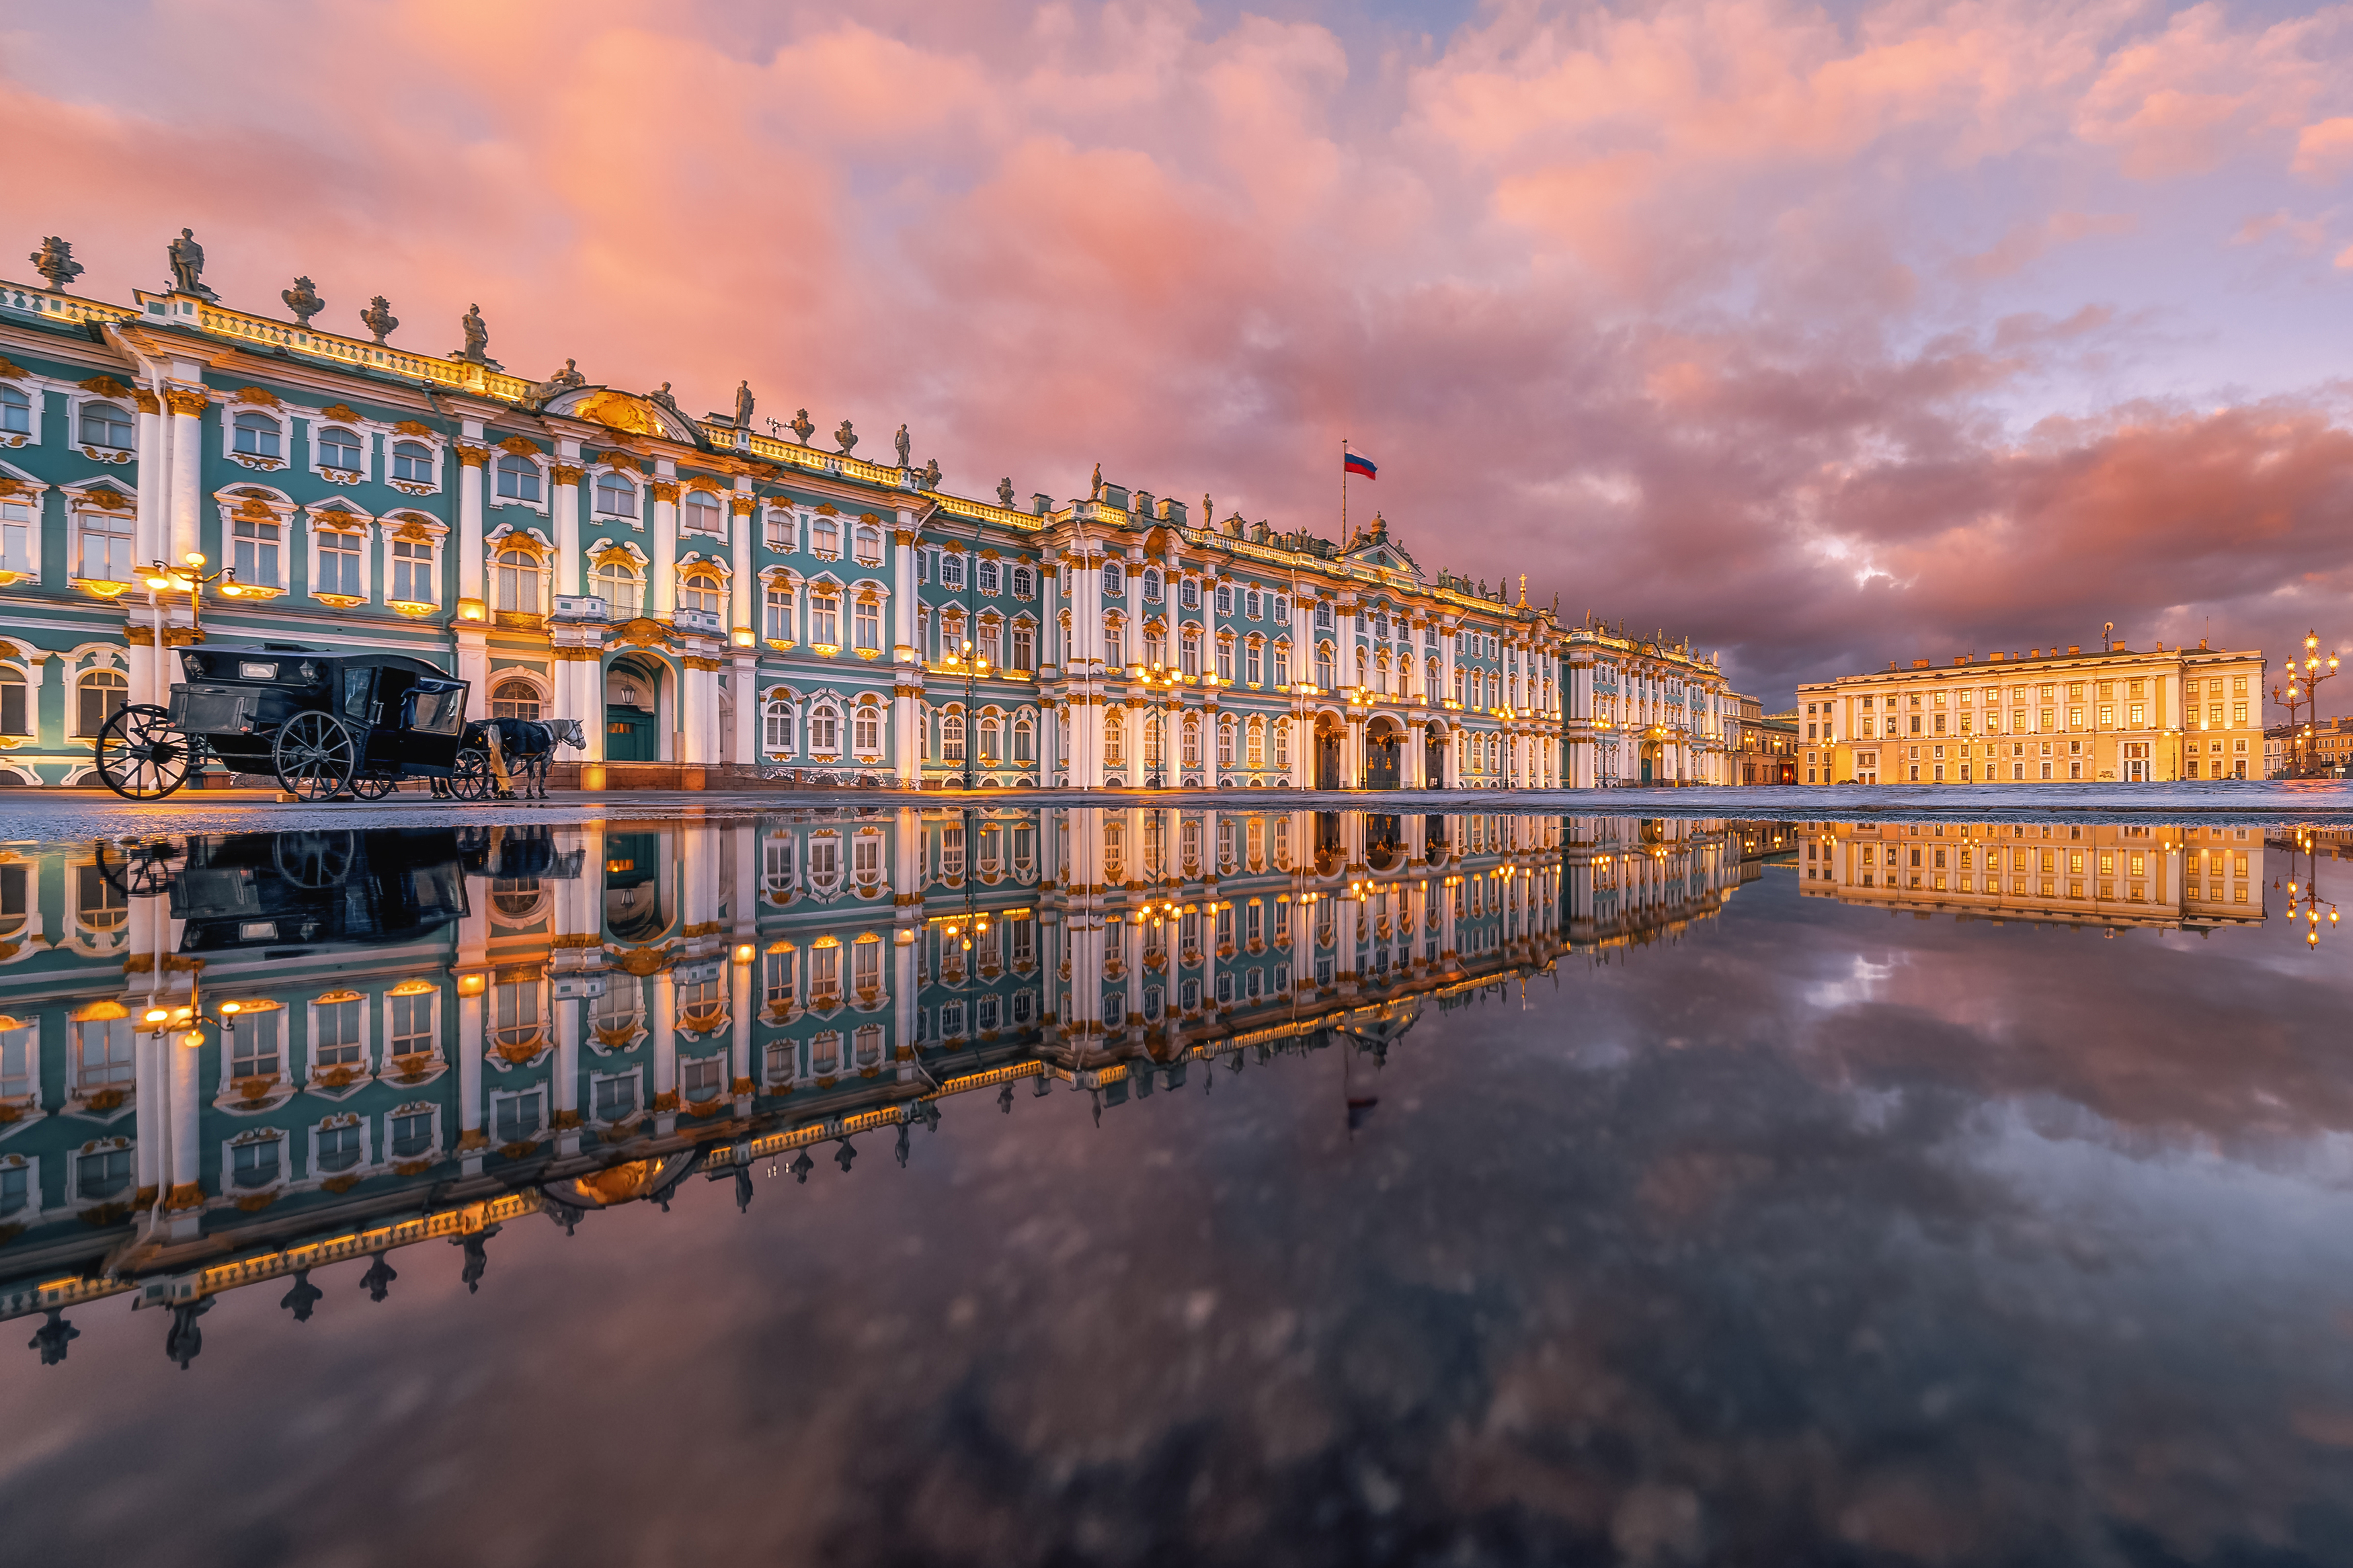 дворцовая площадь, санкт петербург, отражение, закат, Анастасия Мазурева